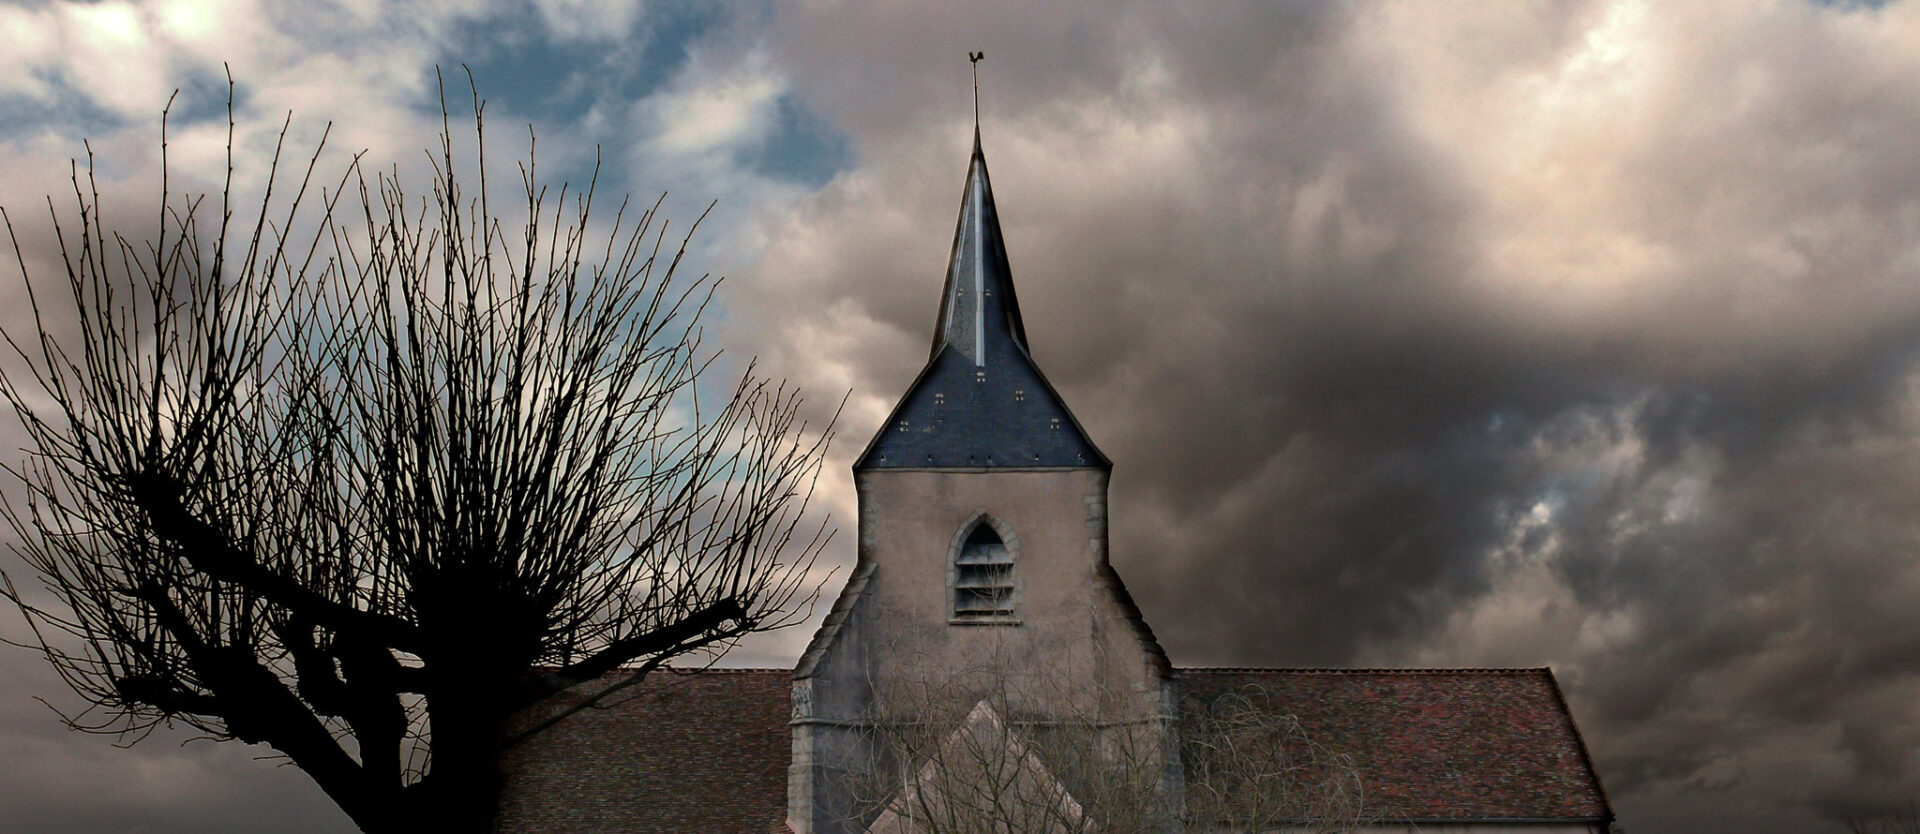 Dans nos contrées, l'avenir des églises est sombre | © Nebojsa Mladjenovic/Flickr/CC BY-NC-ND 2.0